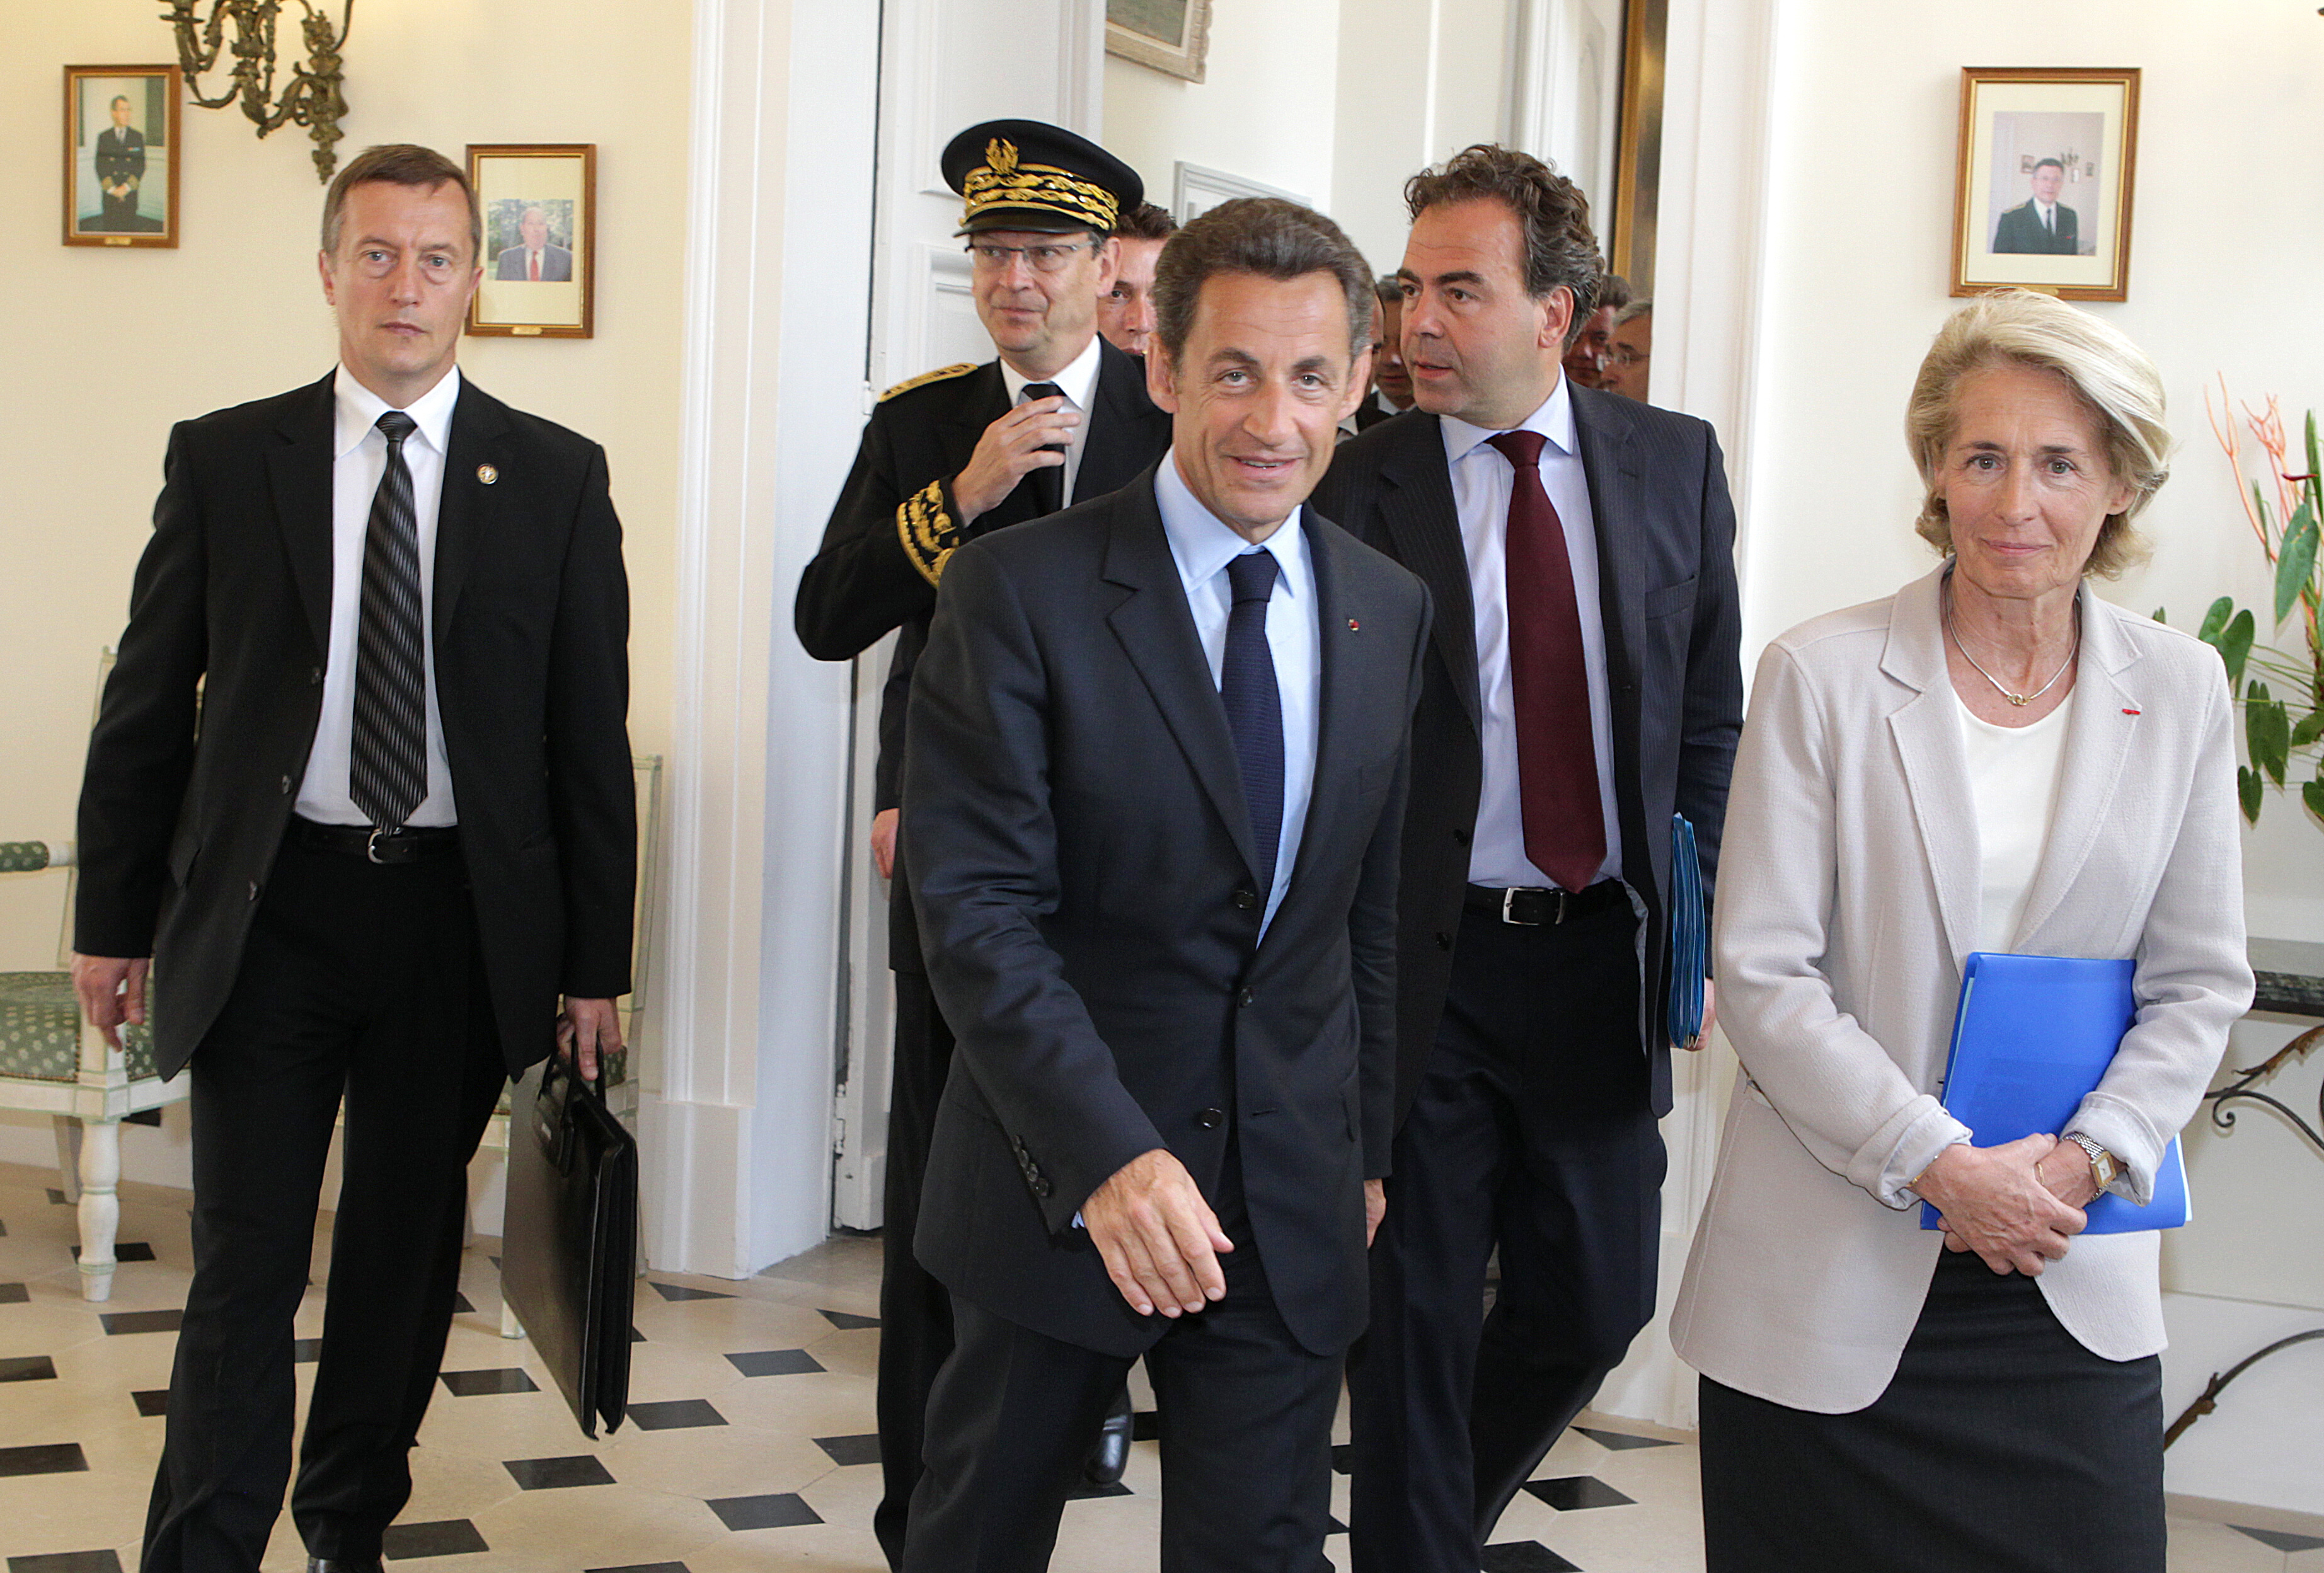 Bűnszervezetben való részvétellel gyanúsítja az ügyészség Nicolas Sarkozy volt francia államfőt